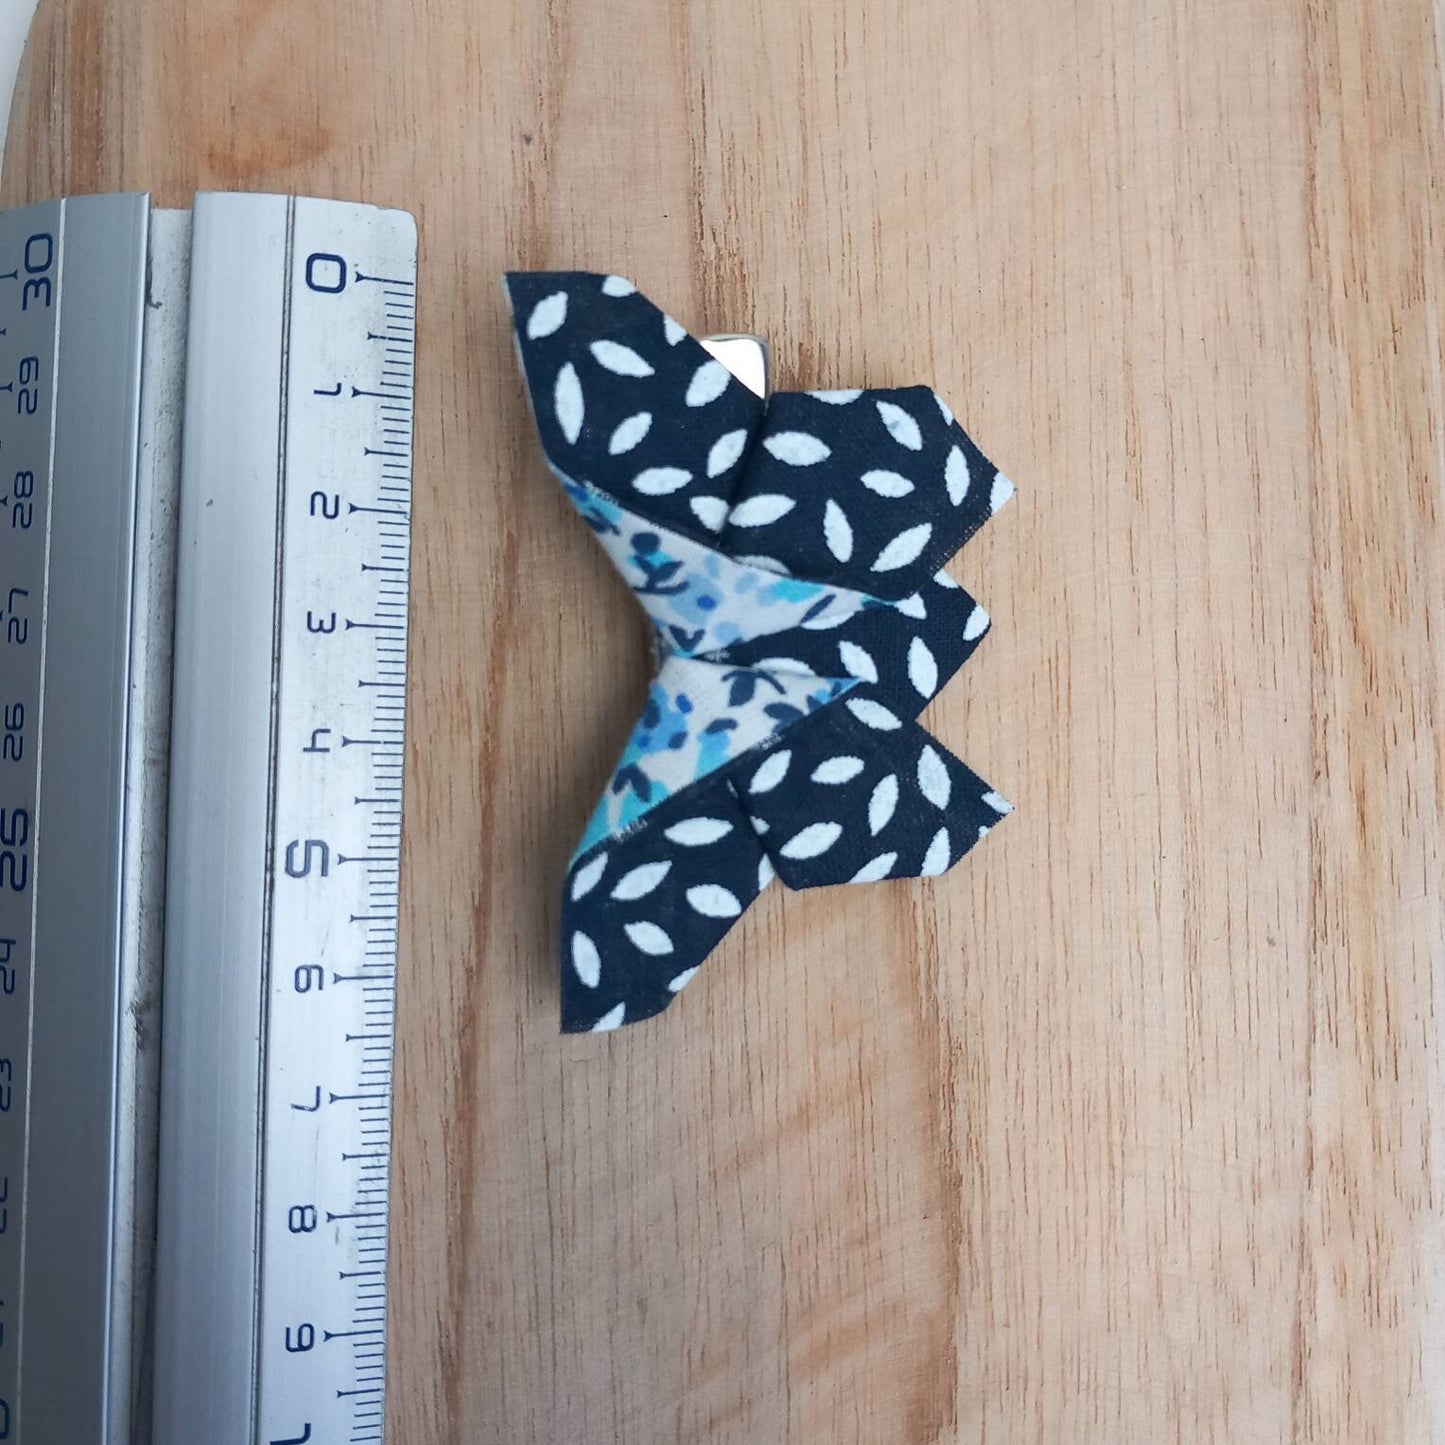 Barrettes avec un papillon en origami, papillon en tissu, origami tissu motif japonais   -